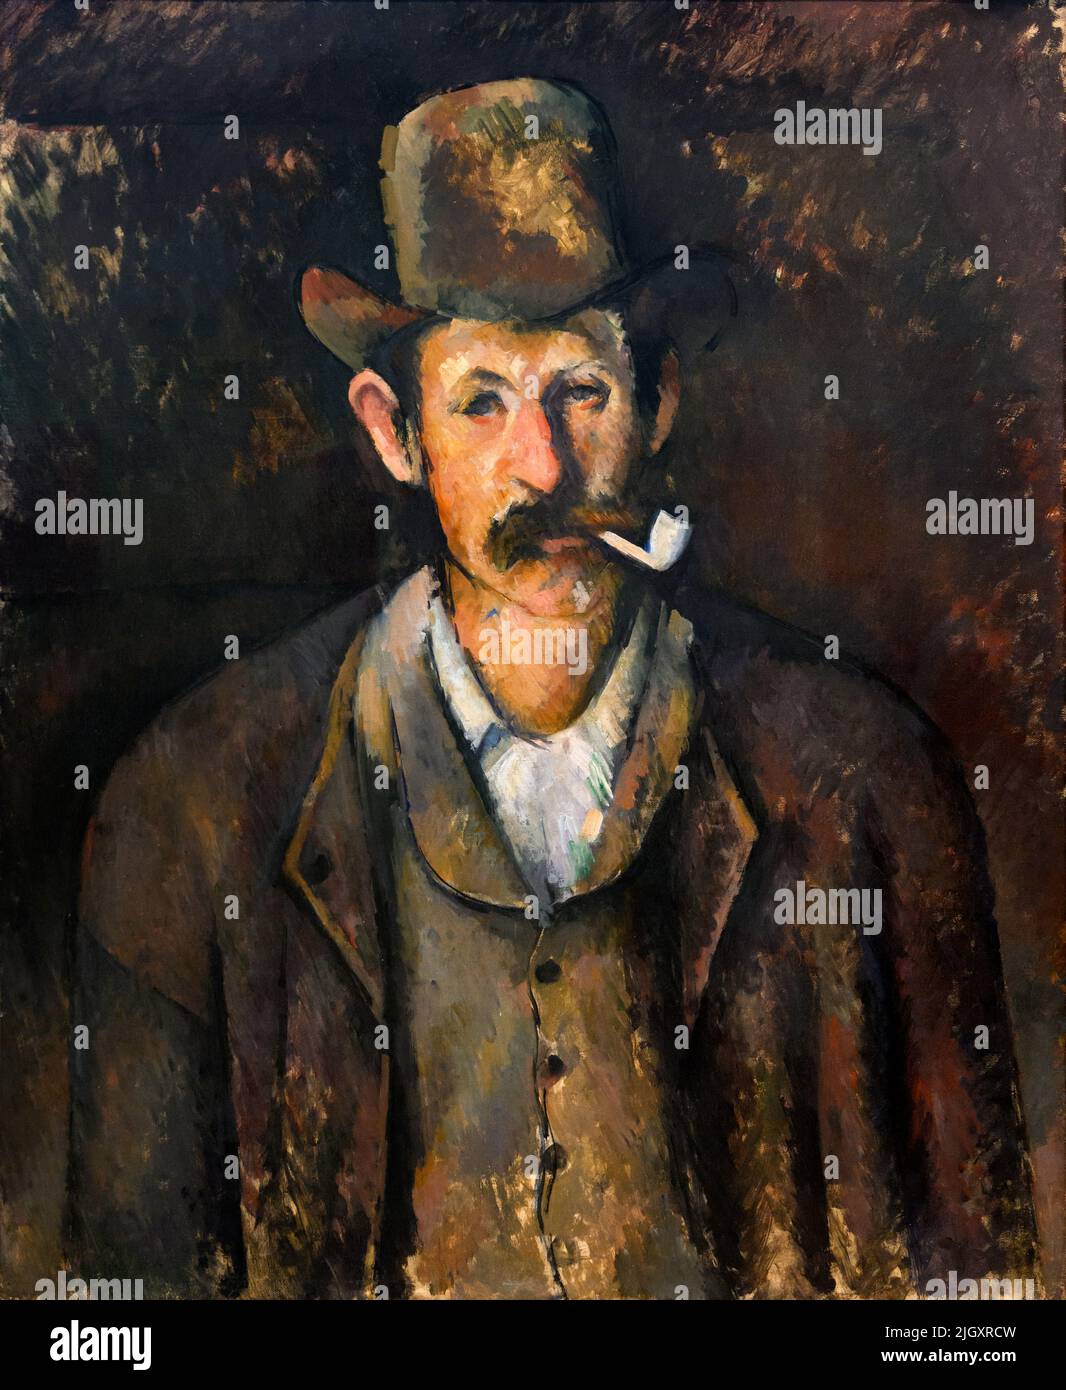 Homme avec un tuyau par Paul Cezanne (1839-1906), huile sur toile, c.1892-96 Banque D'Images